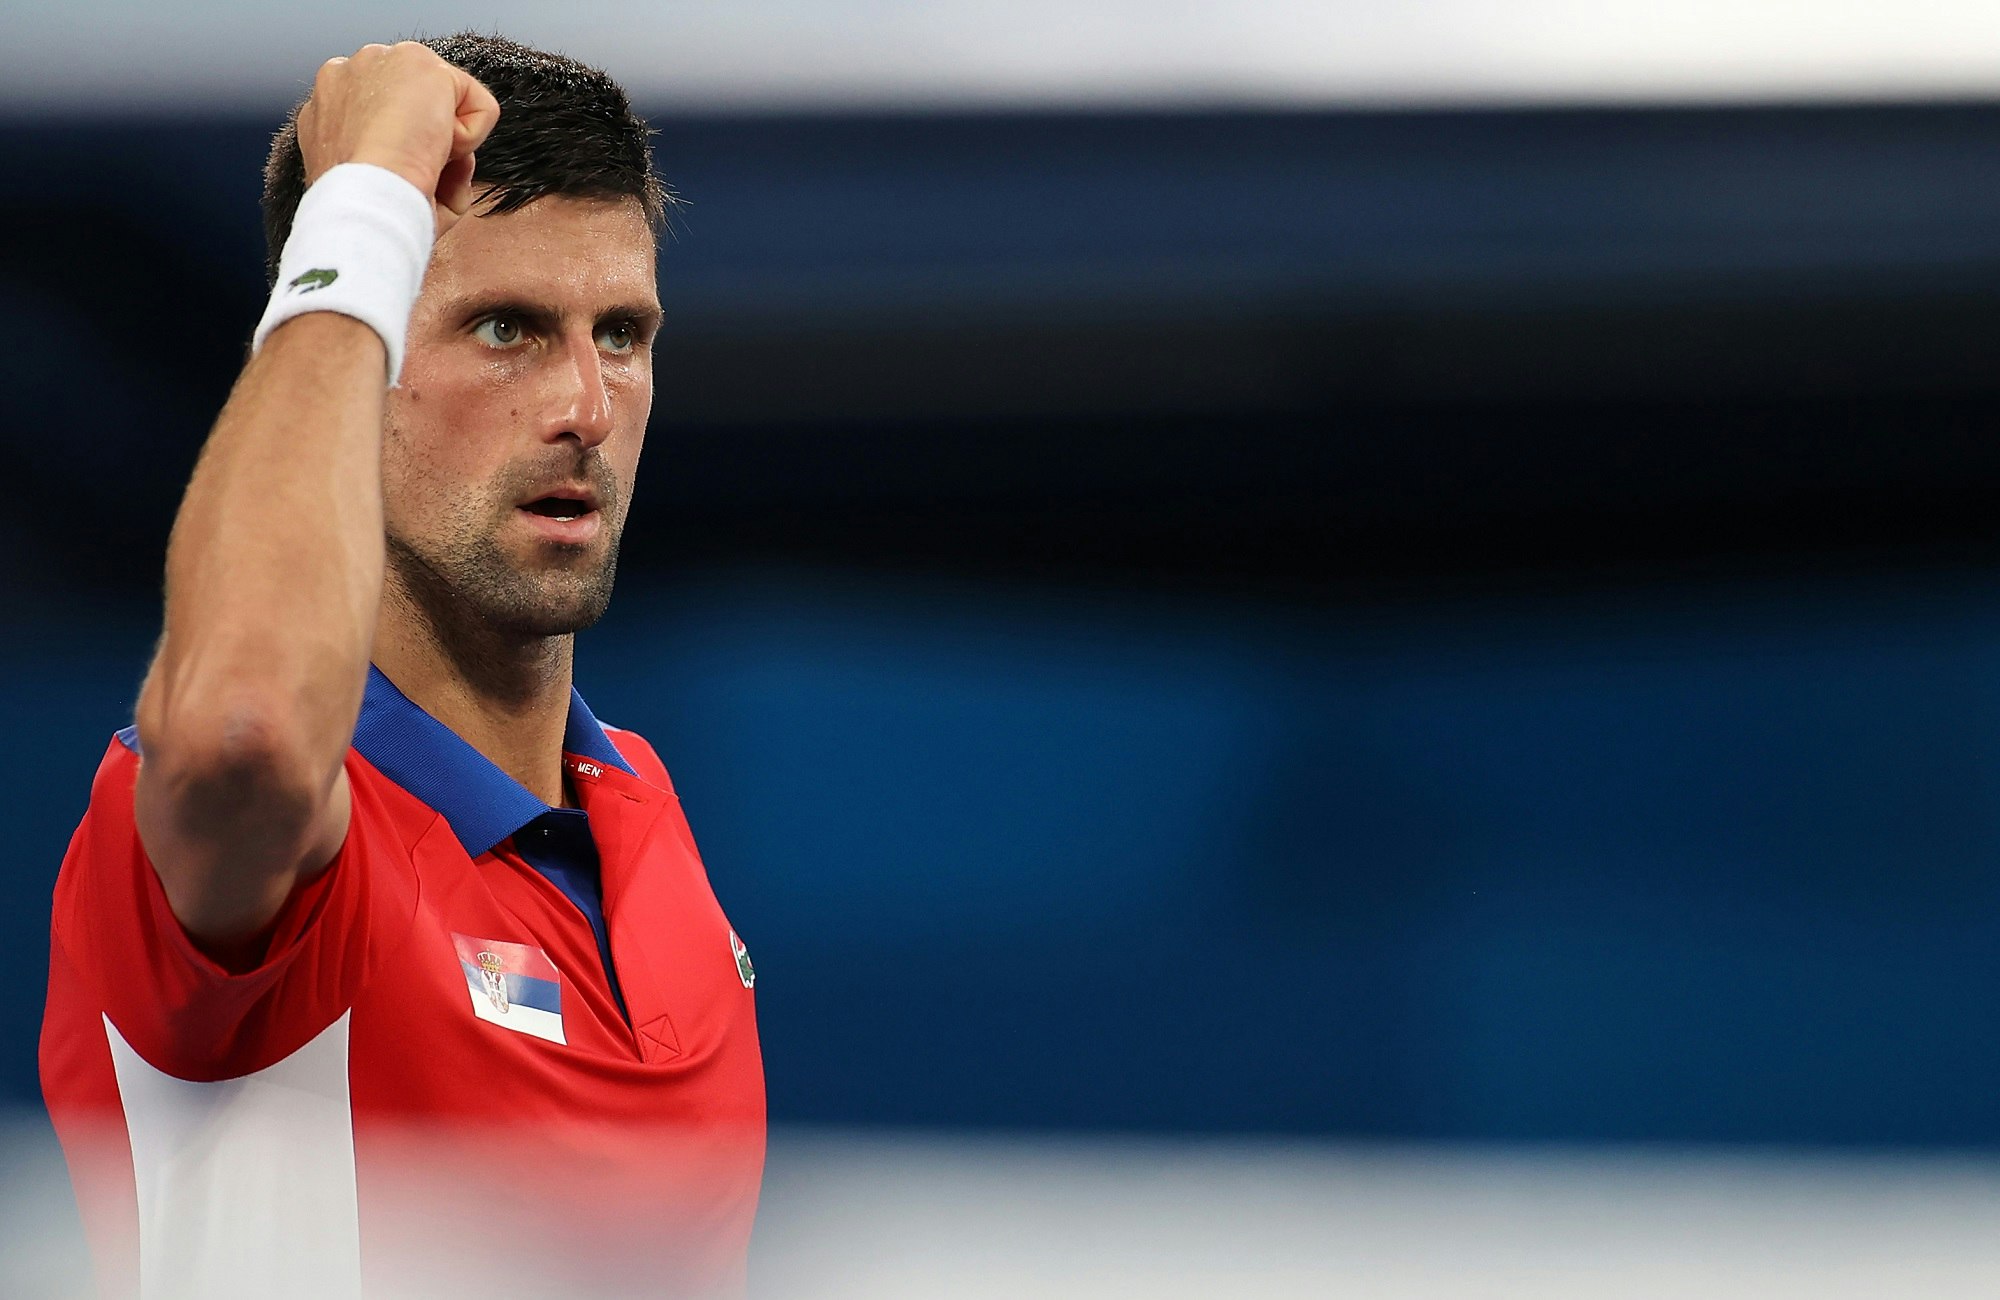 Igrzyska olimpijskie Tokio - tenis, Novak Djokovic